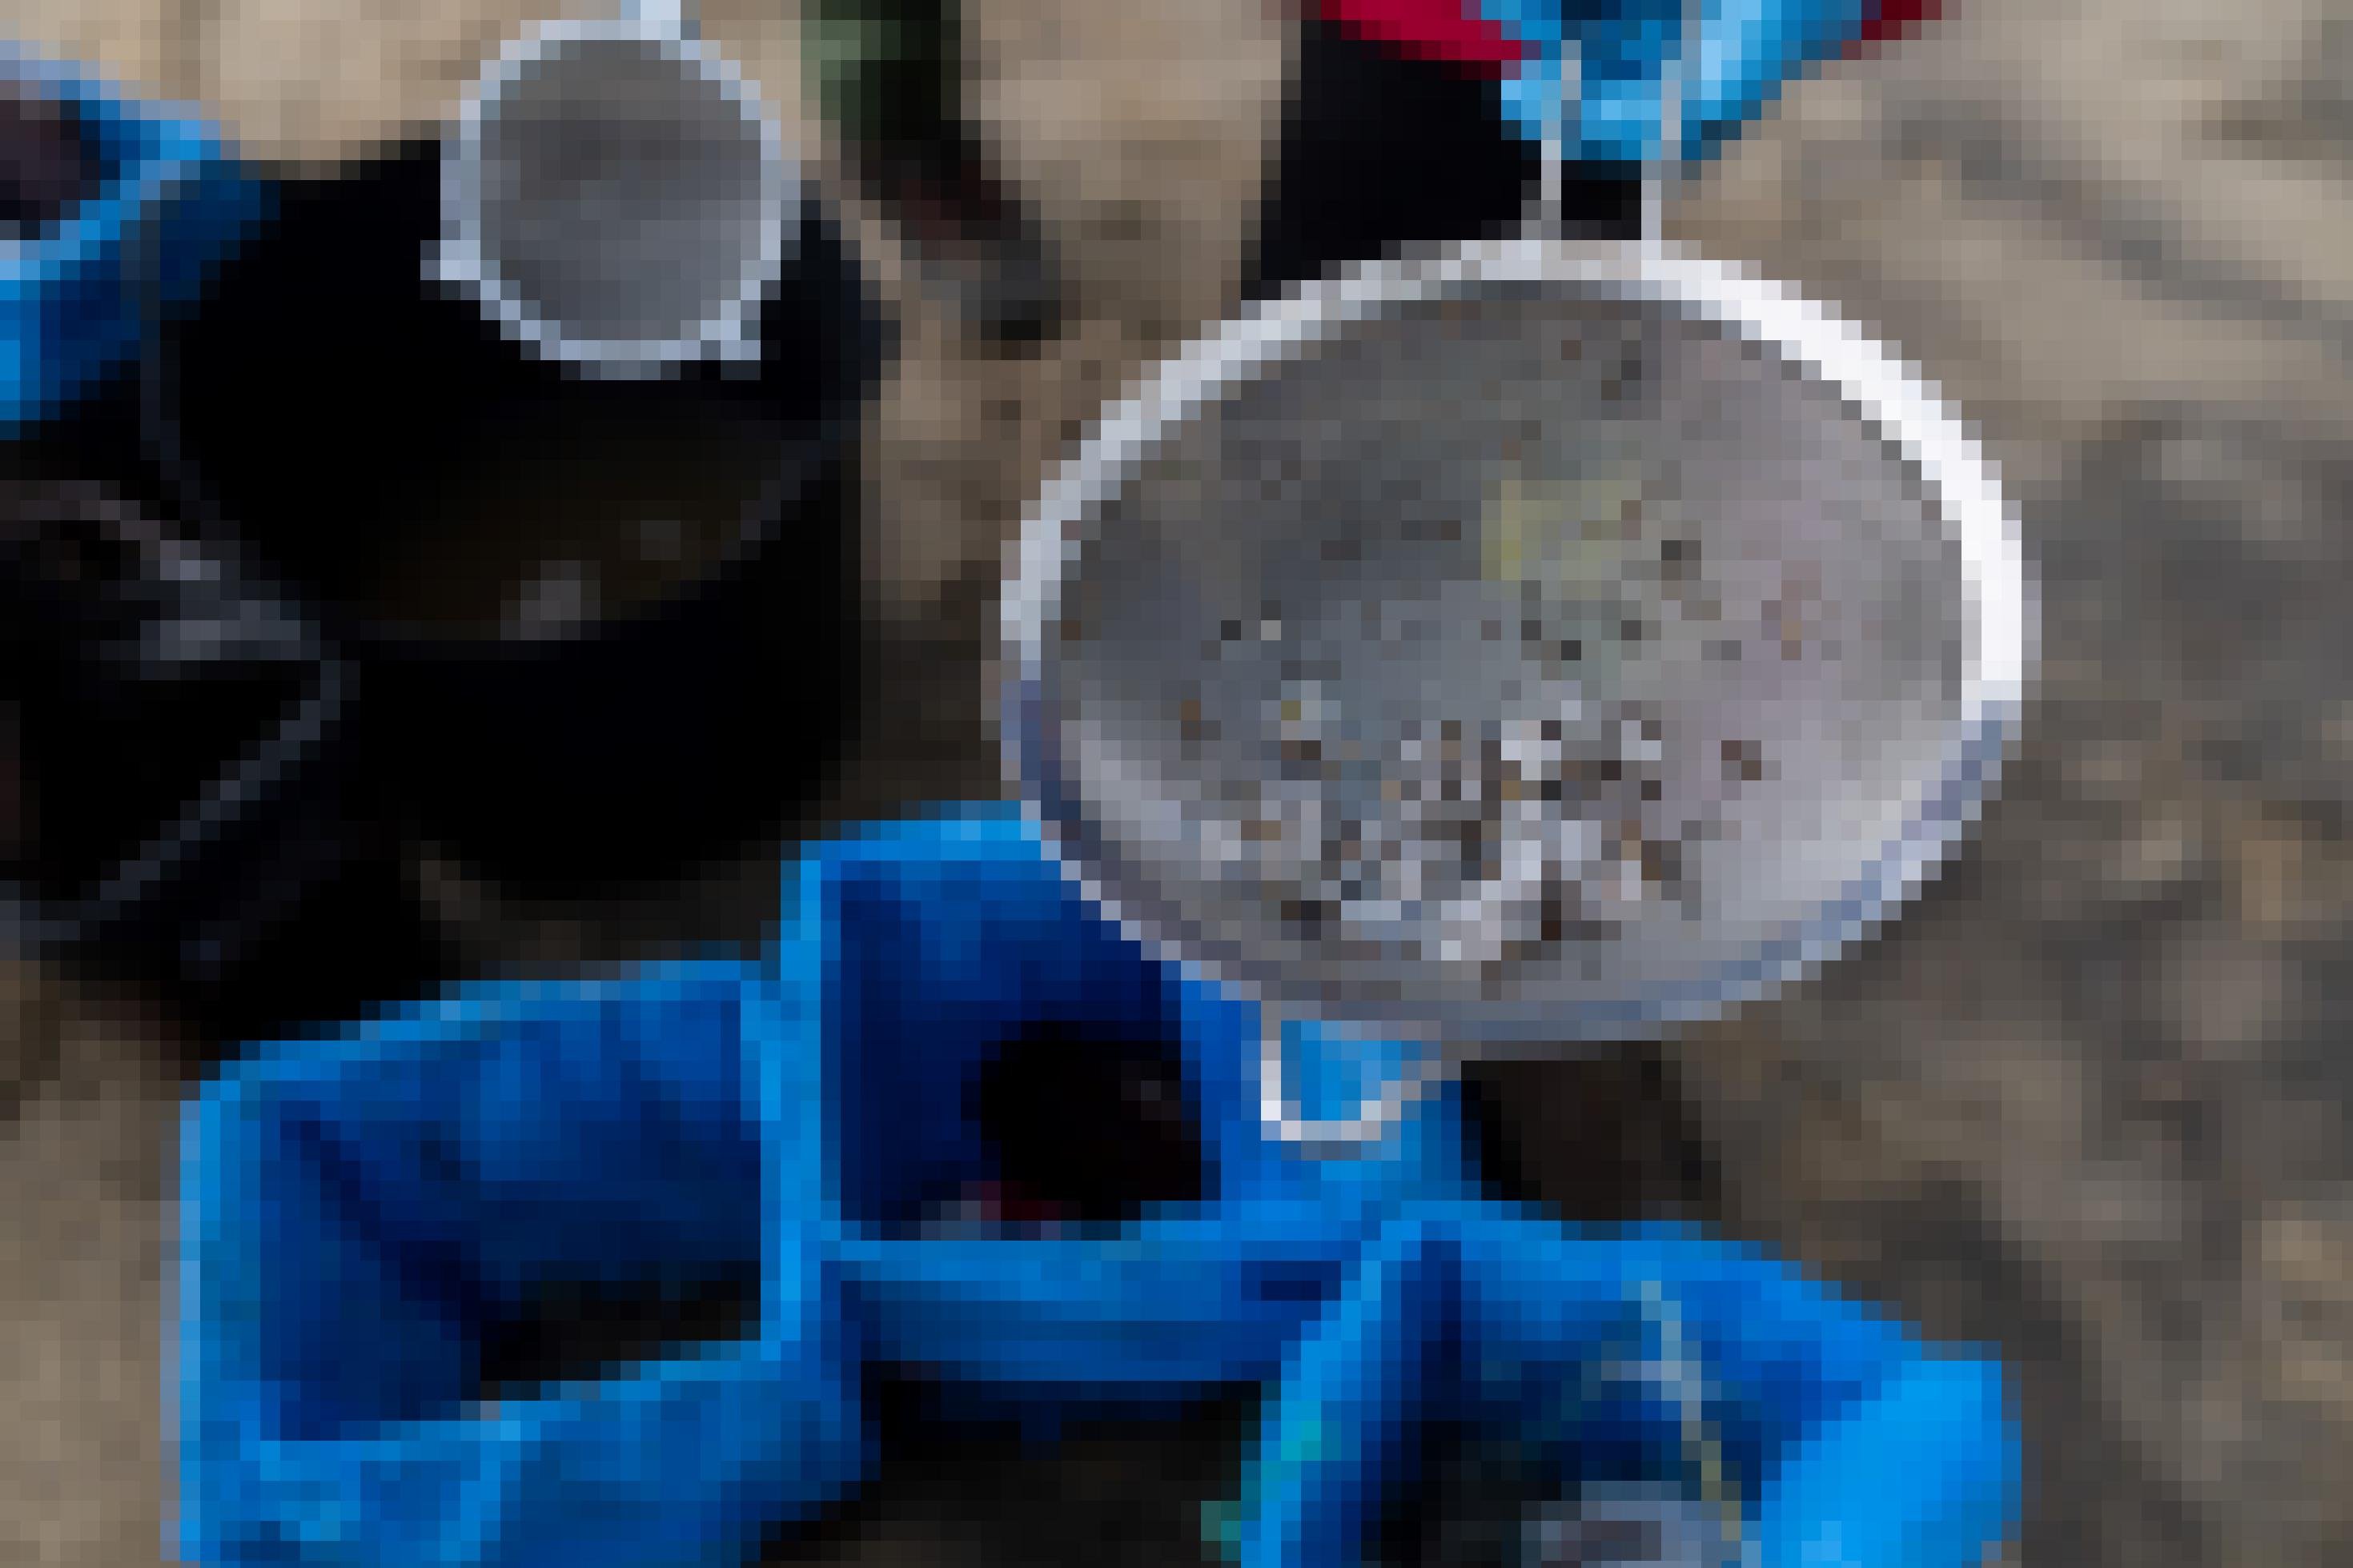 Zwei Küchsensiebe werden in die Kamera gezeigt. An den Sieben hängen kleine weiße Plastikkügelchen, vermischt mit etwas Sand. Der Hintergrund zeigt den Sandboden, auf dem die Helfer stehen, sowie drei Mülleimer.